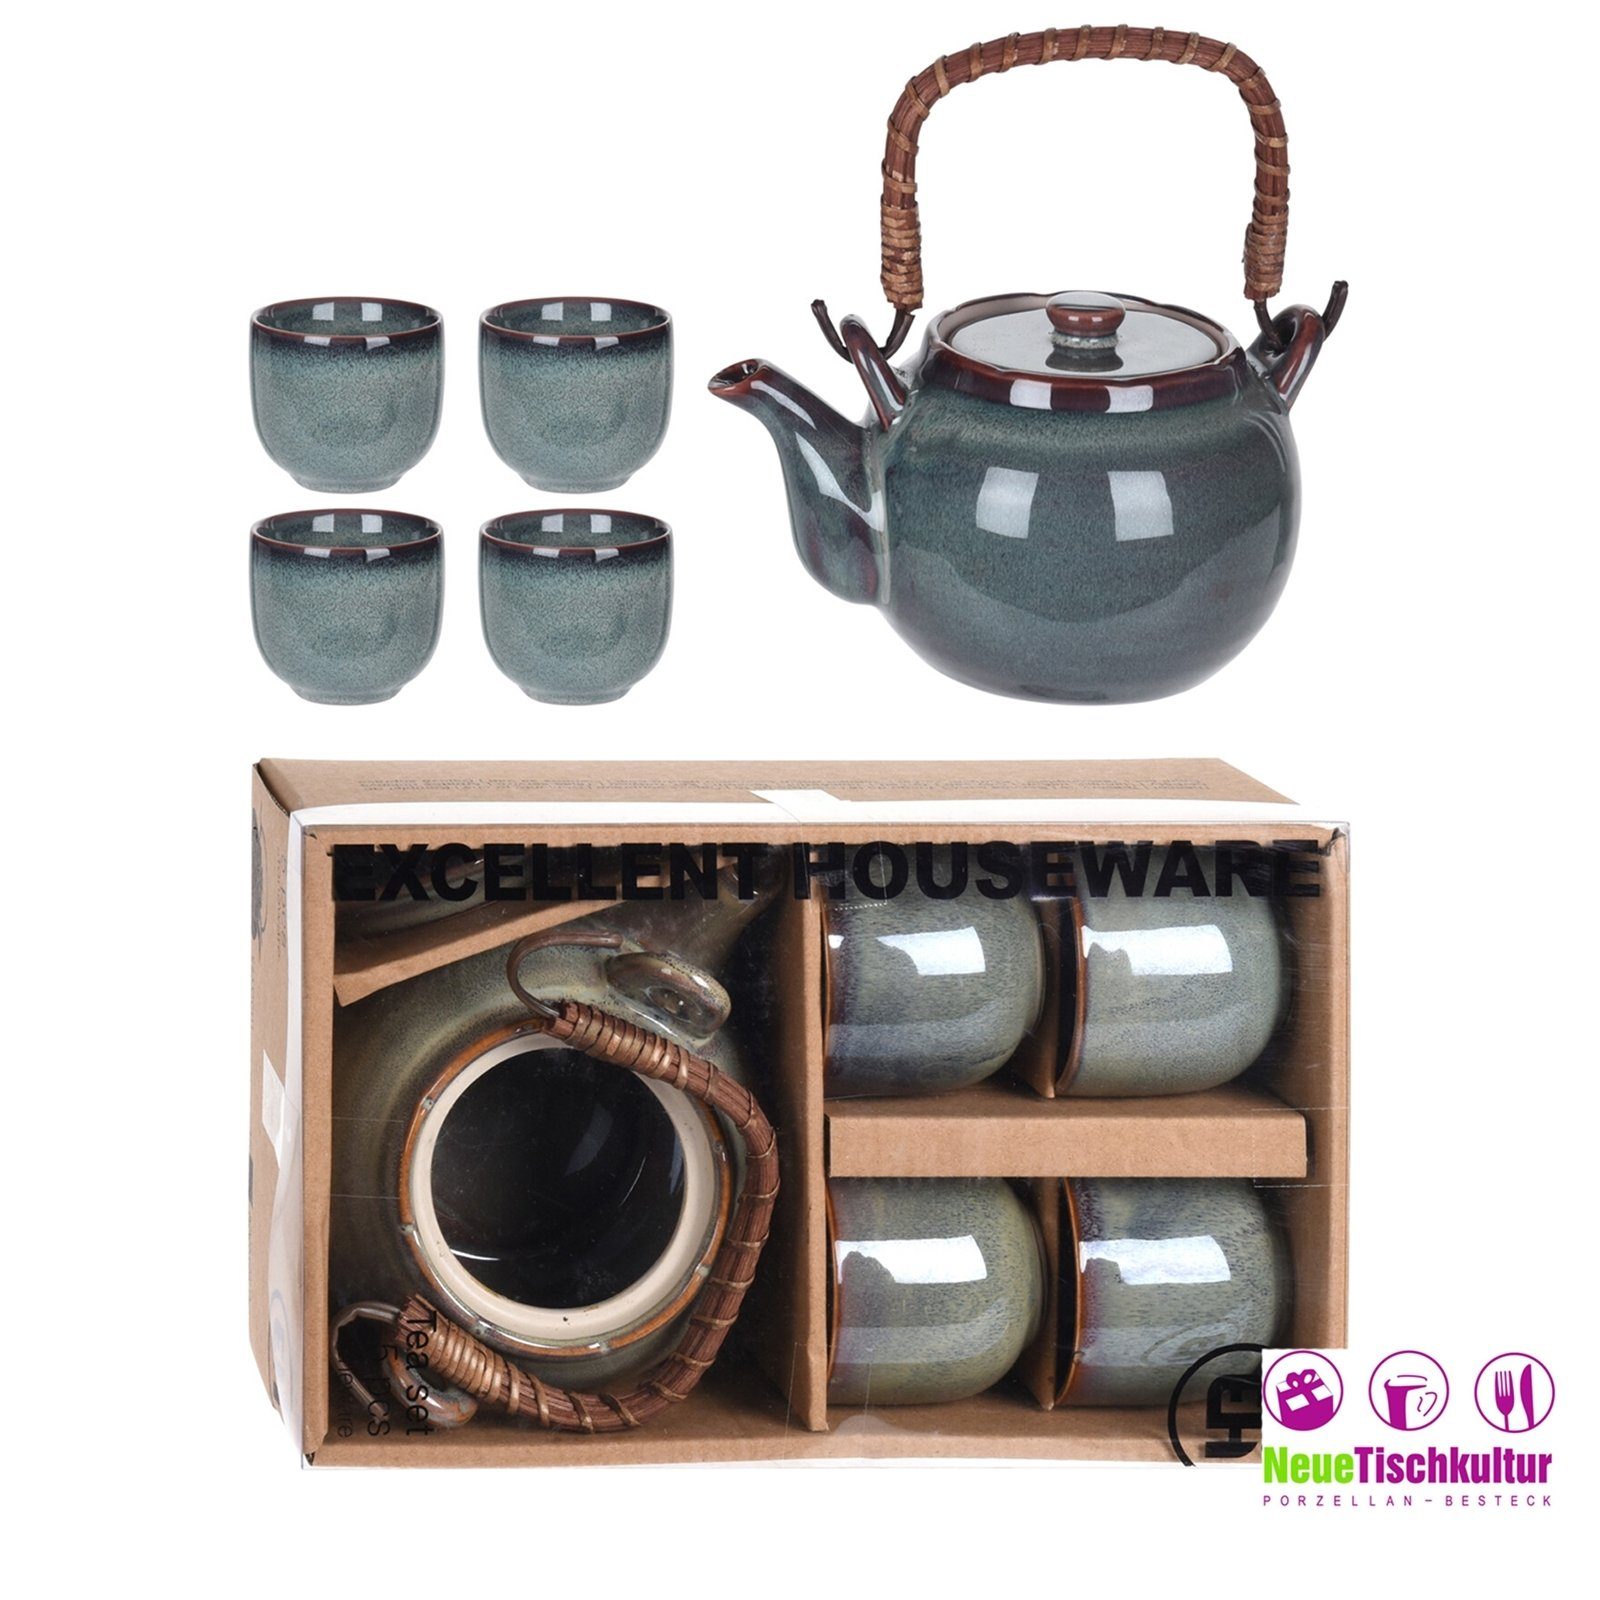 4 mit Teekanne Keramik Teekanne Becher Neuetischkultur